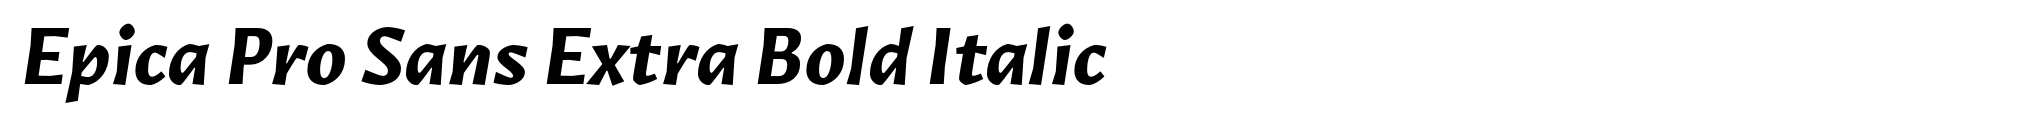 Epica Pro Sans Extra Bold Italic image